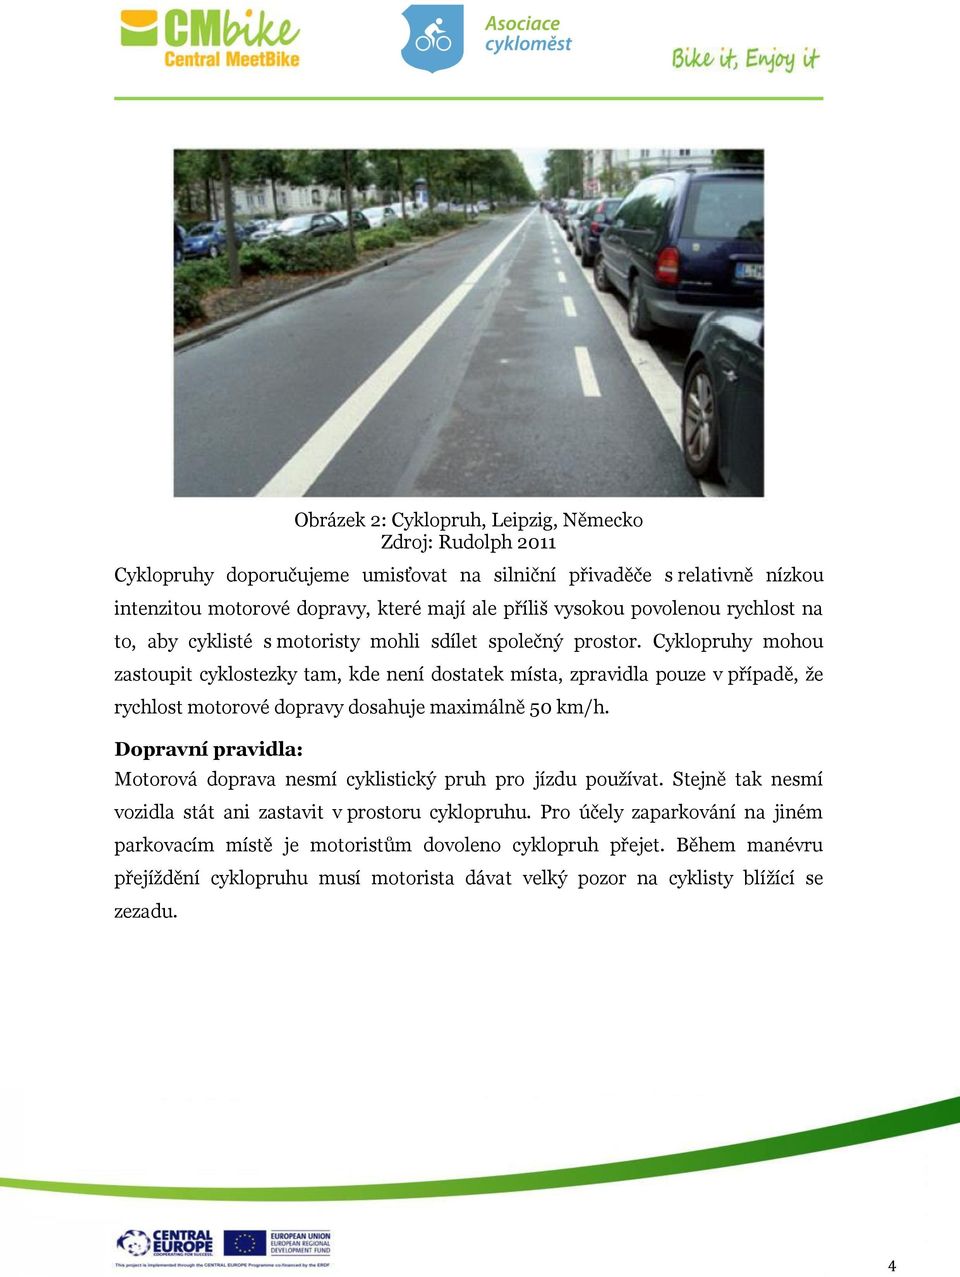 Cyklopruhy mohou zastoupit cyklostezky tam, kde není dostatek místa, zpravidla pouze v případě, že rychlost motorové dopravy dosahuje maximálně 50 km/h.